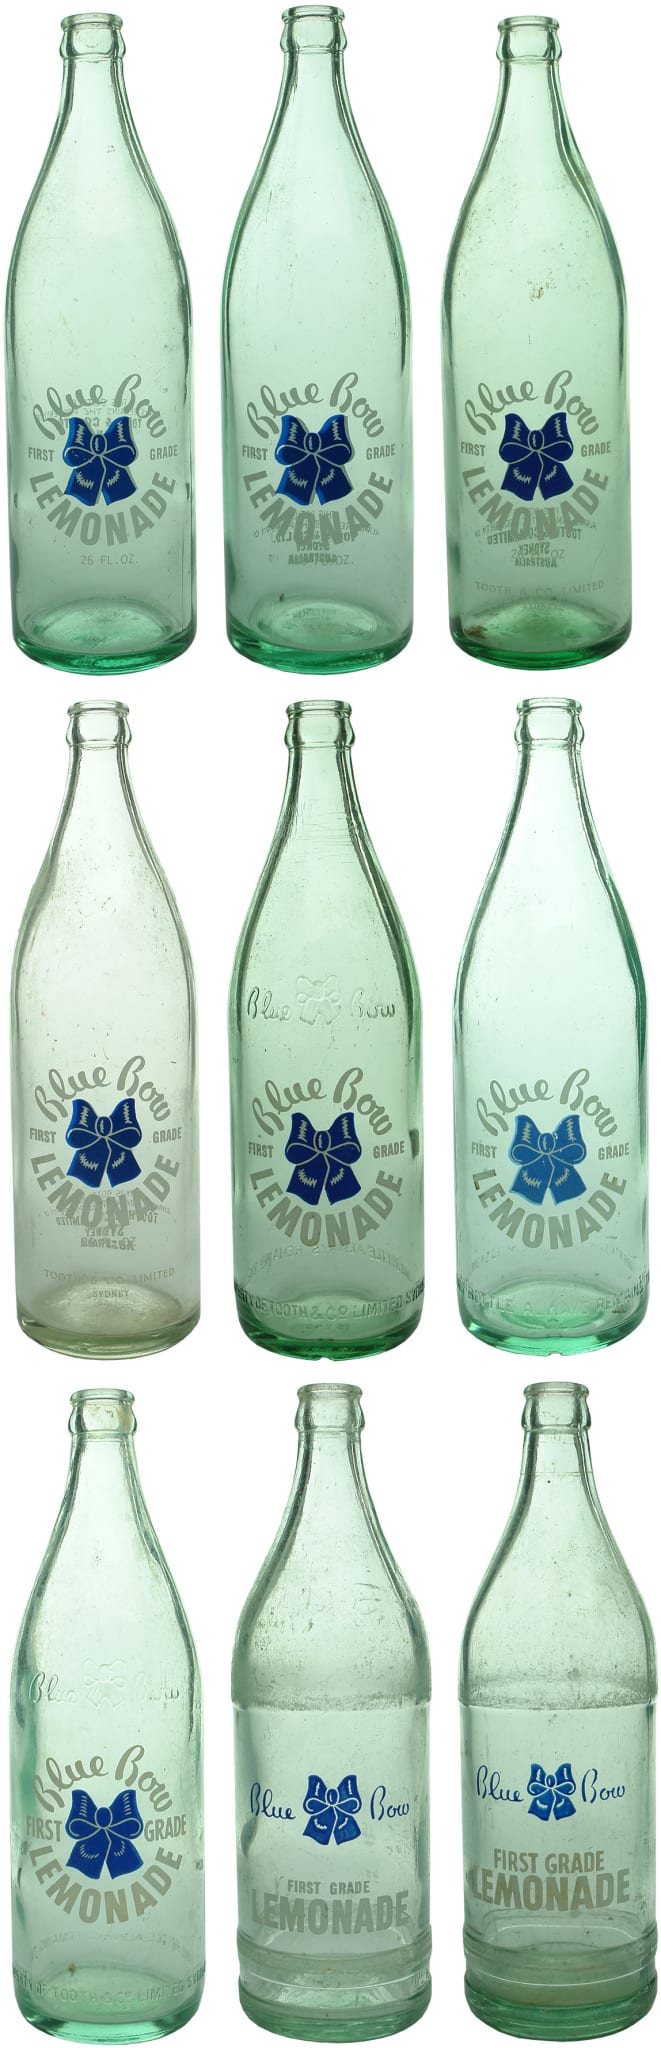 Blue Bow Sydney Vintage Crown Seal Bottles